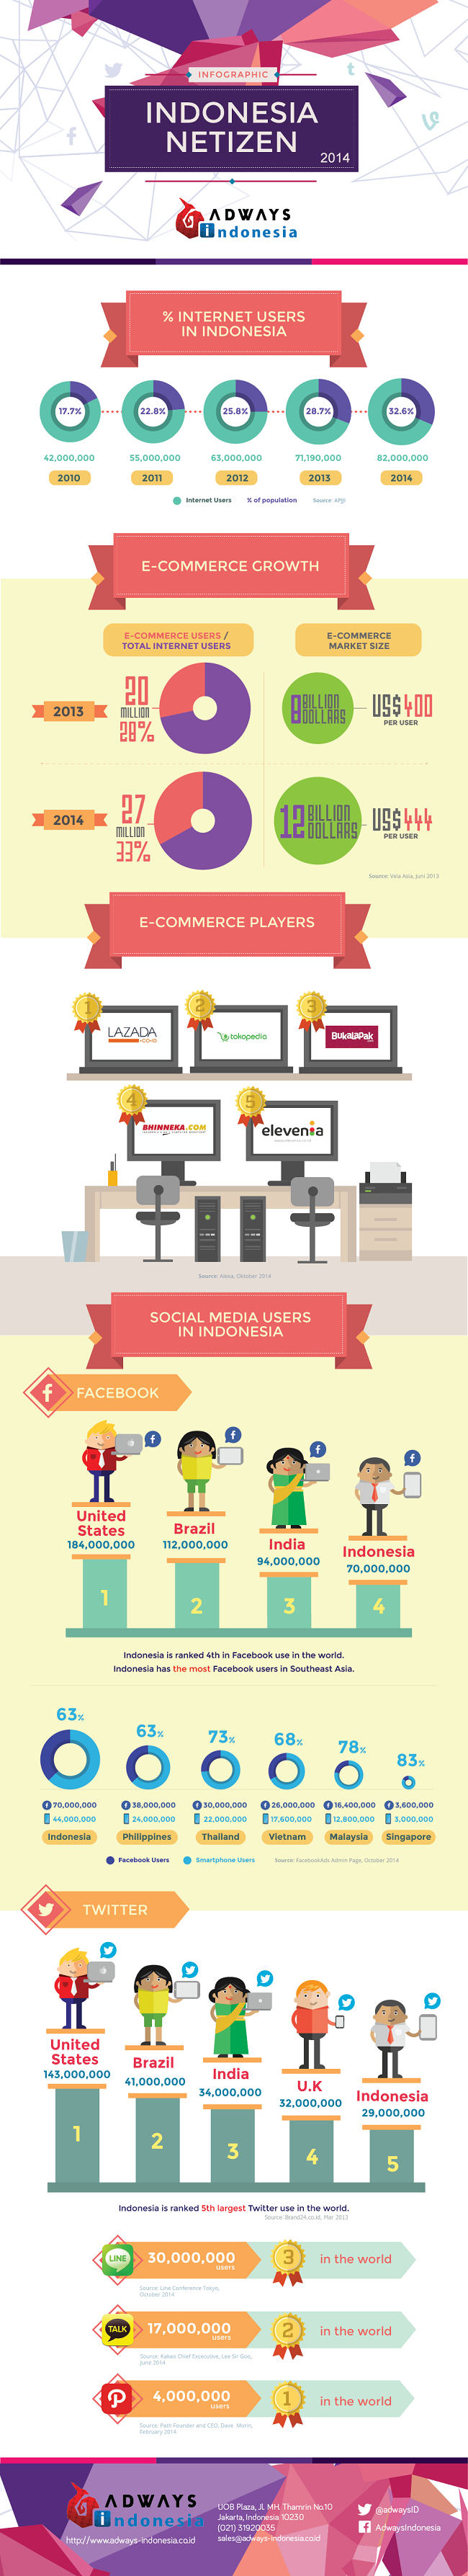 infografis pertumbuhan internet di indonesia 2014